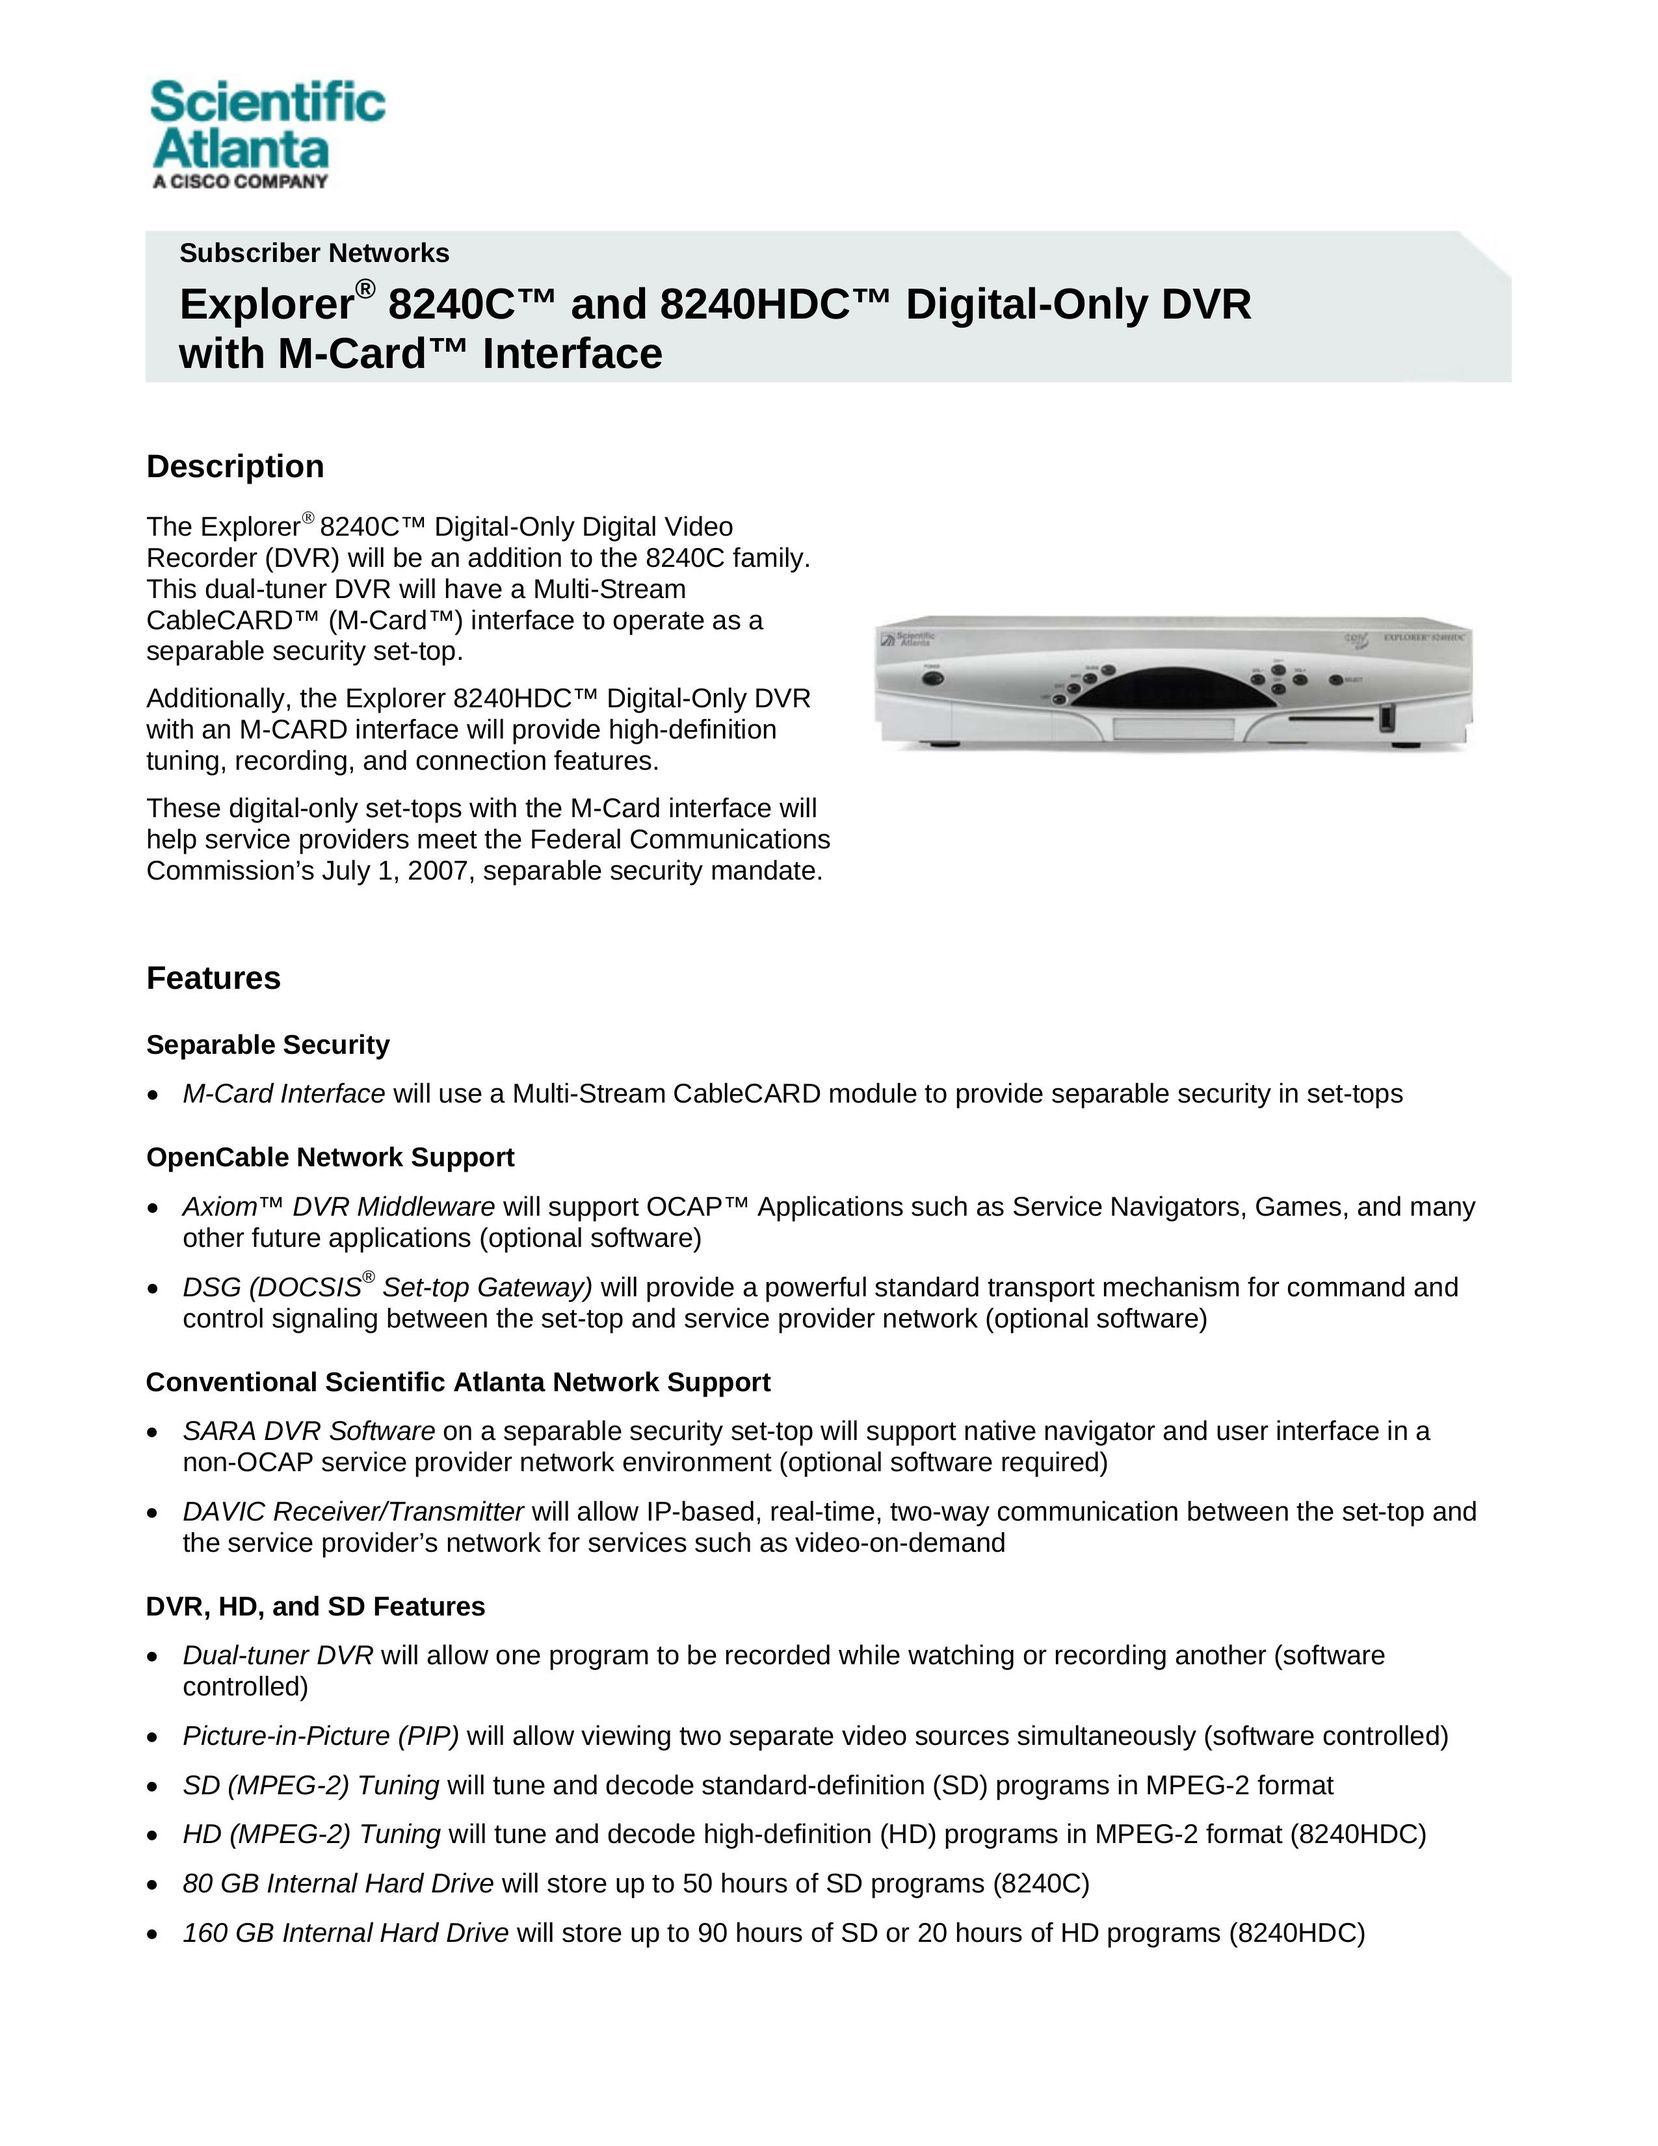 Scientific Atlanta 8240HDC DVR User Manual